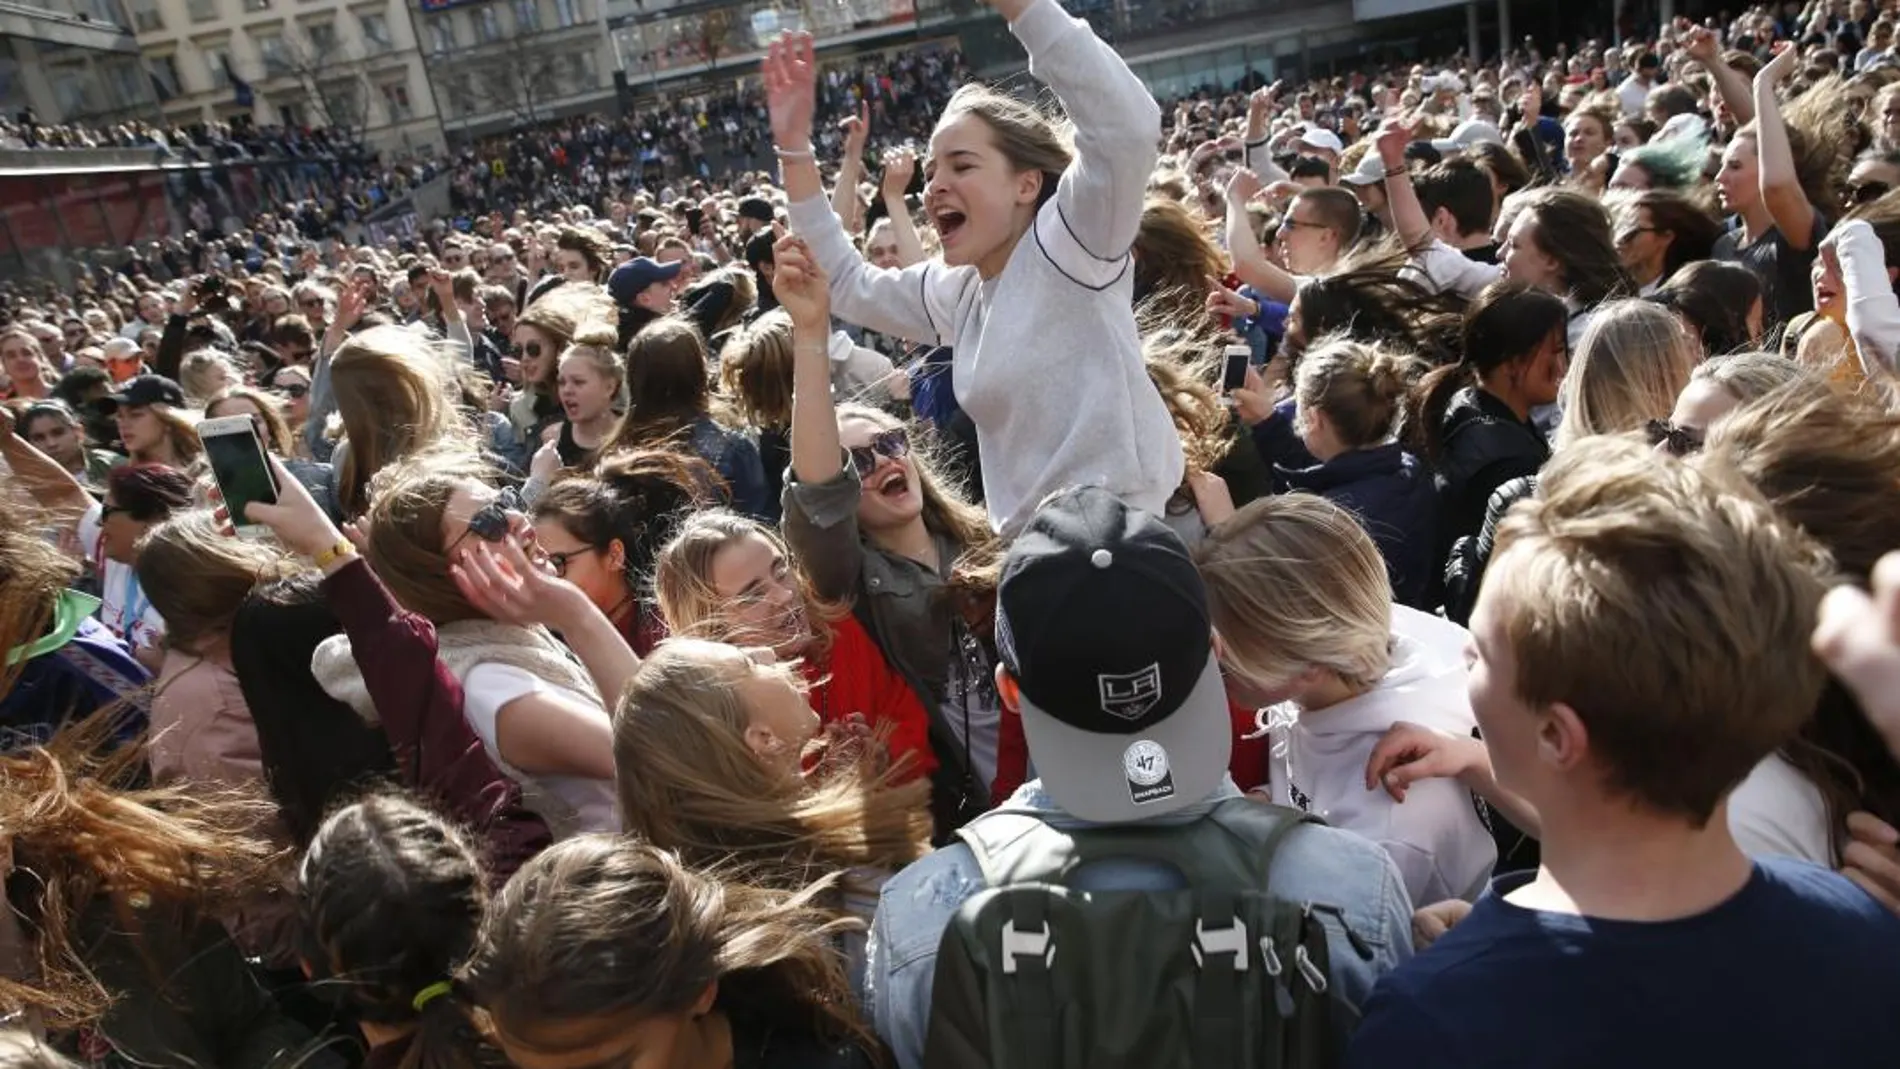 Miles de fans en la plaza de Sergels_Torg Platz de Estocolmo bailaron para rendir homenaje a Avicii